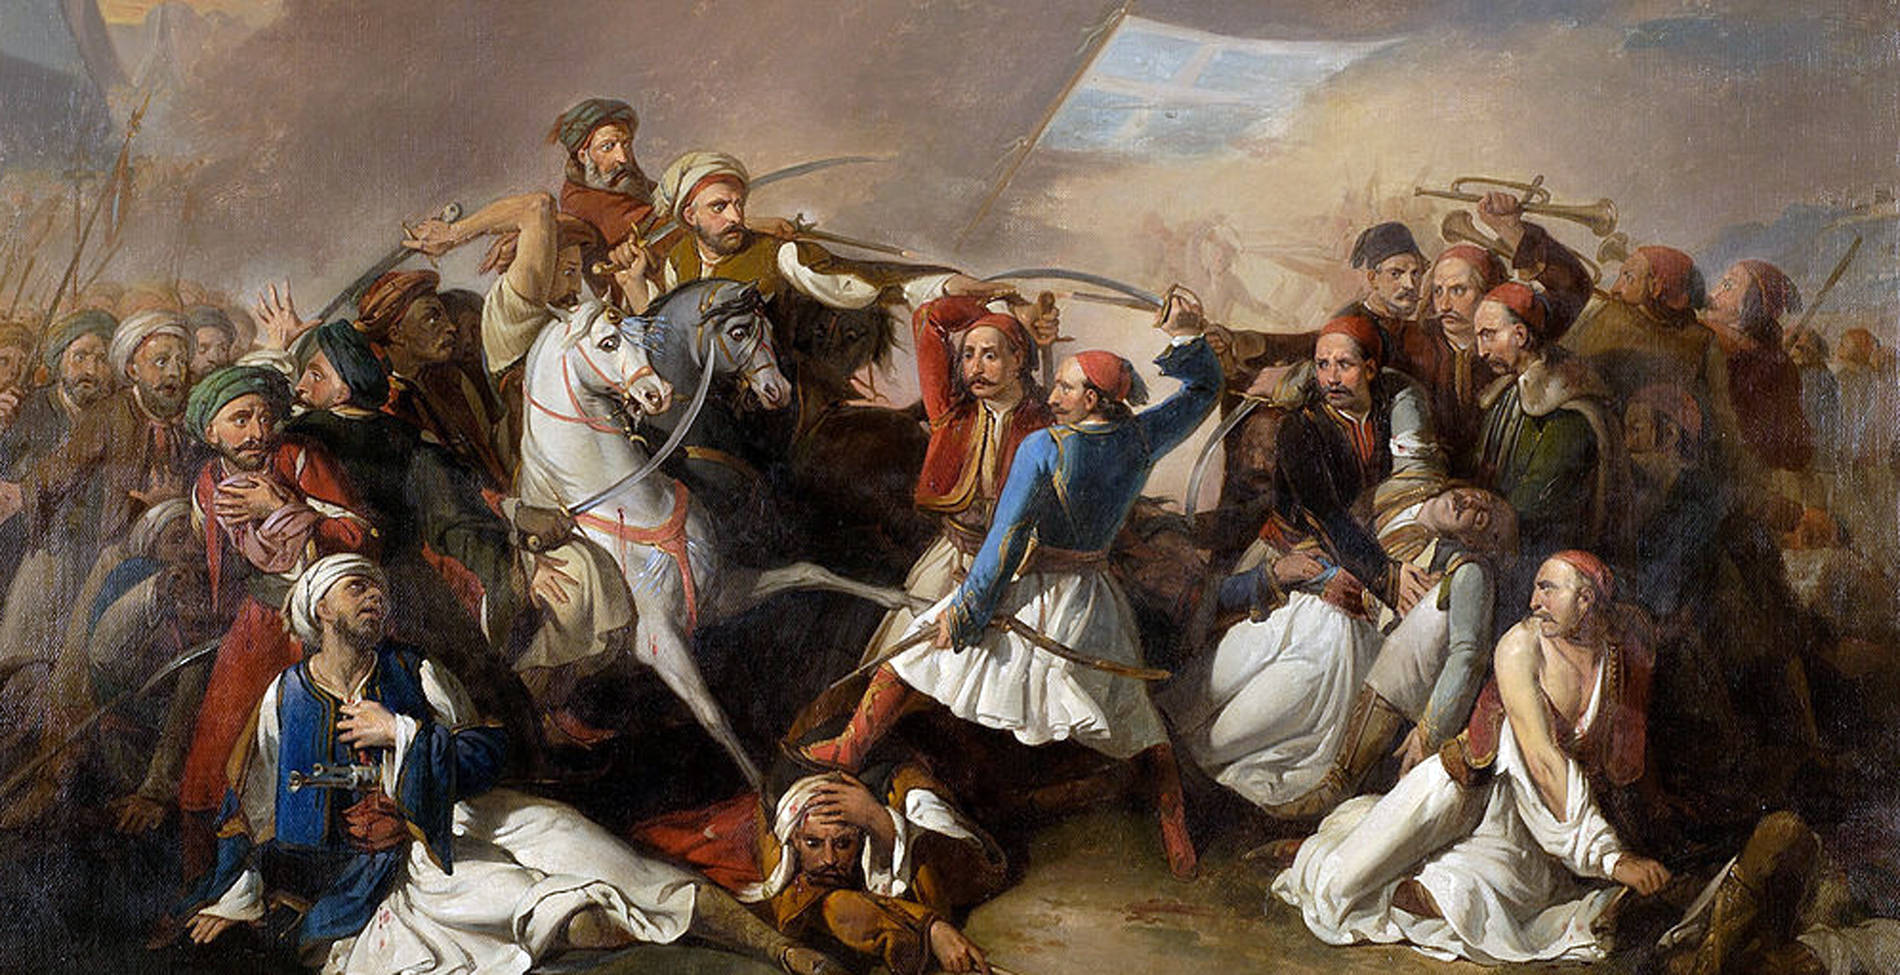 Η προσπάθεια καπήλευσης της Ελληνικής Επανάστασης του 1821 από τους Αλβανούς εθνικιστές